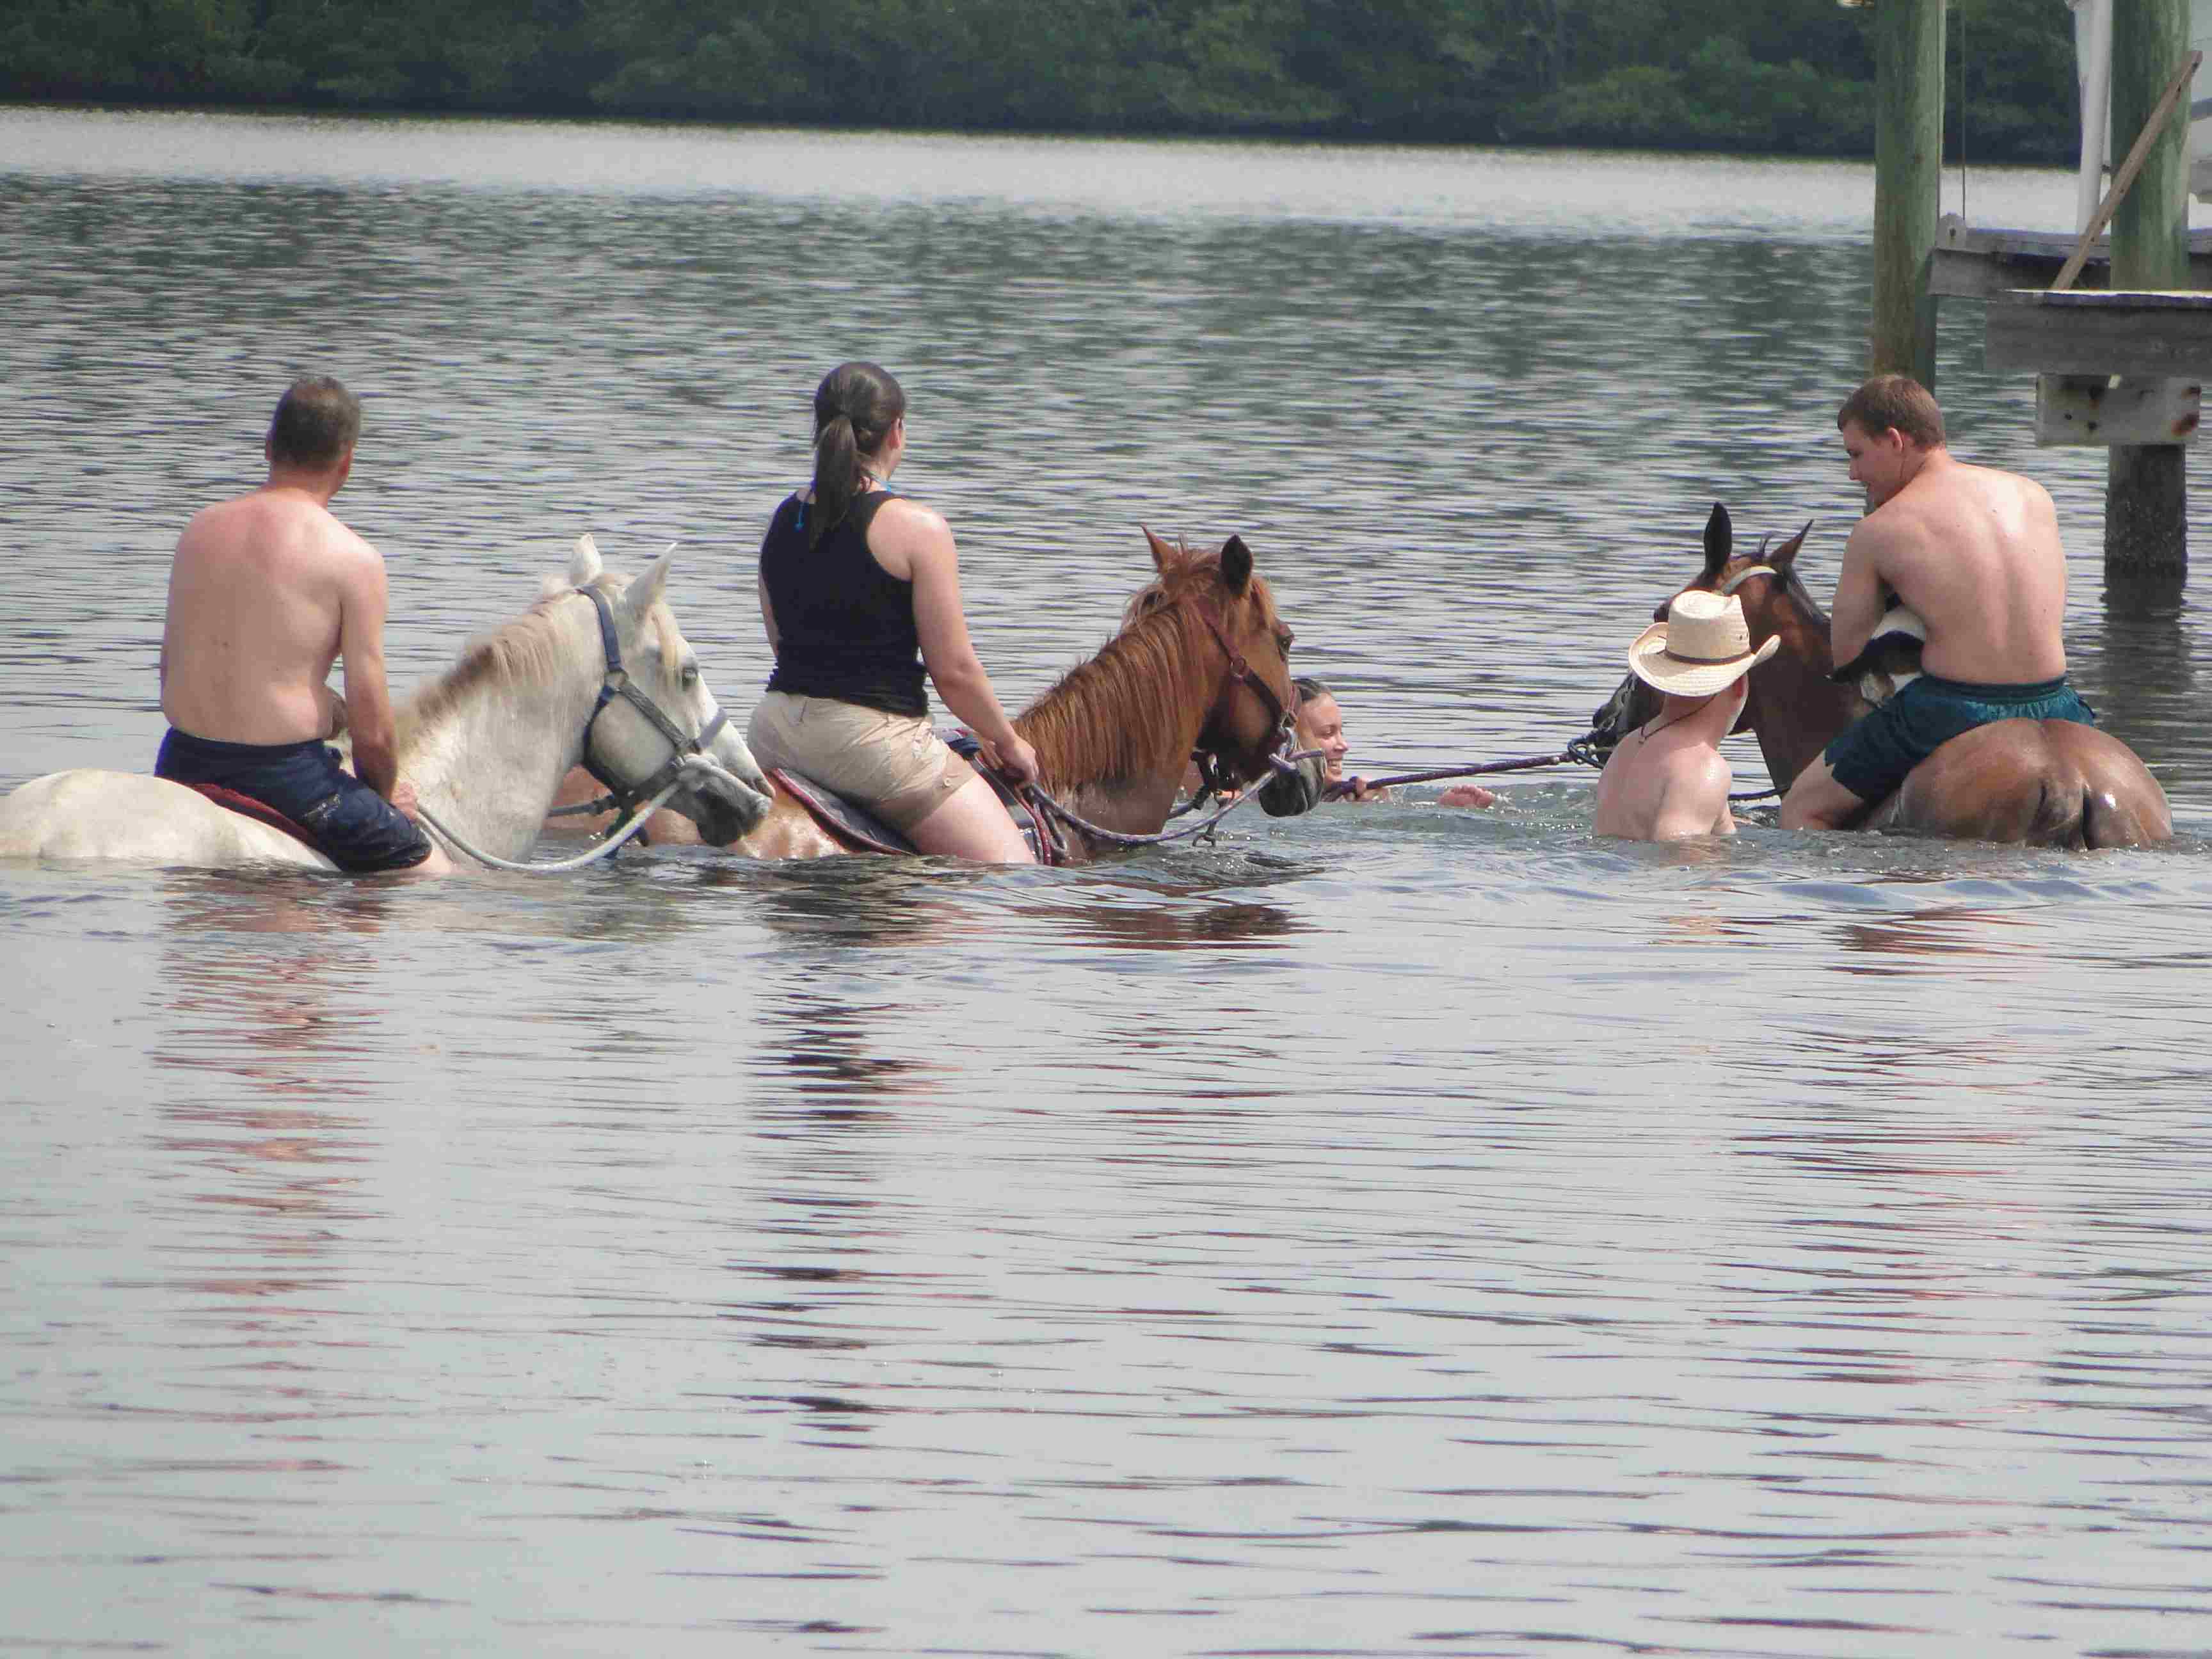 Du går i vattnet till häst: de modiga försöker surfa. Foto: Bradenton Area